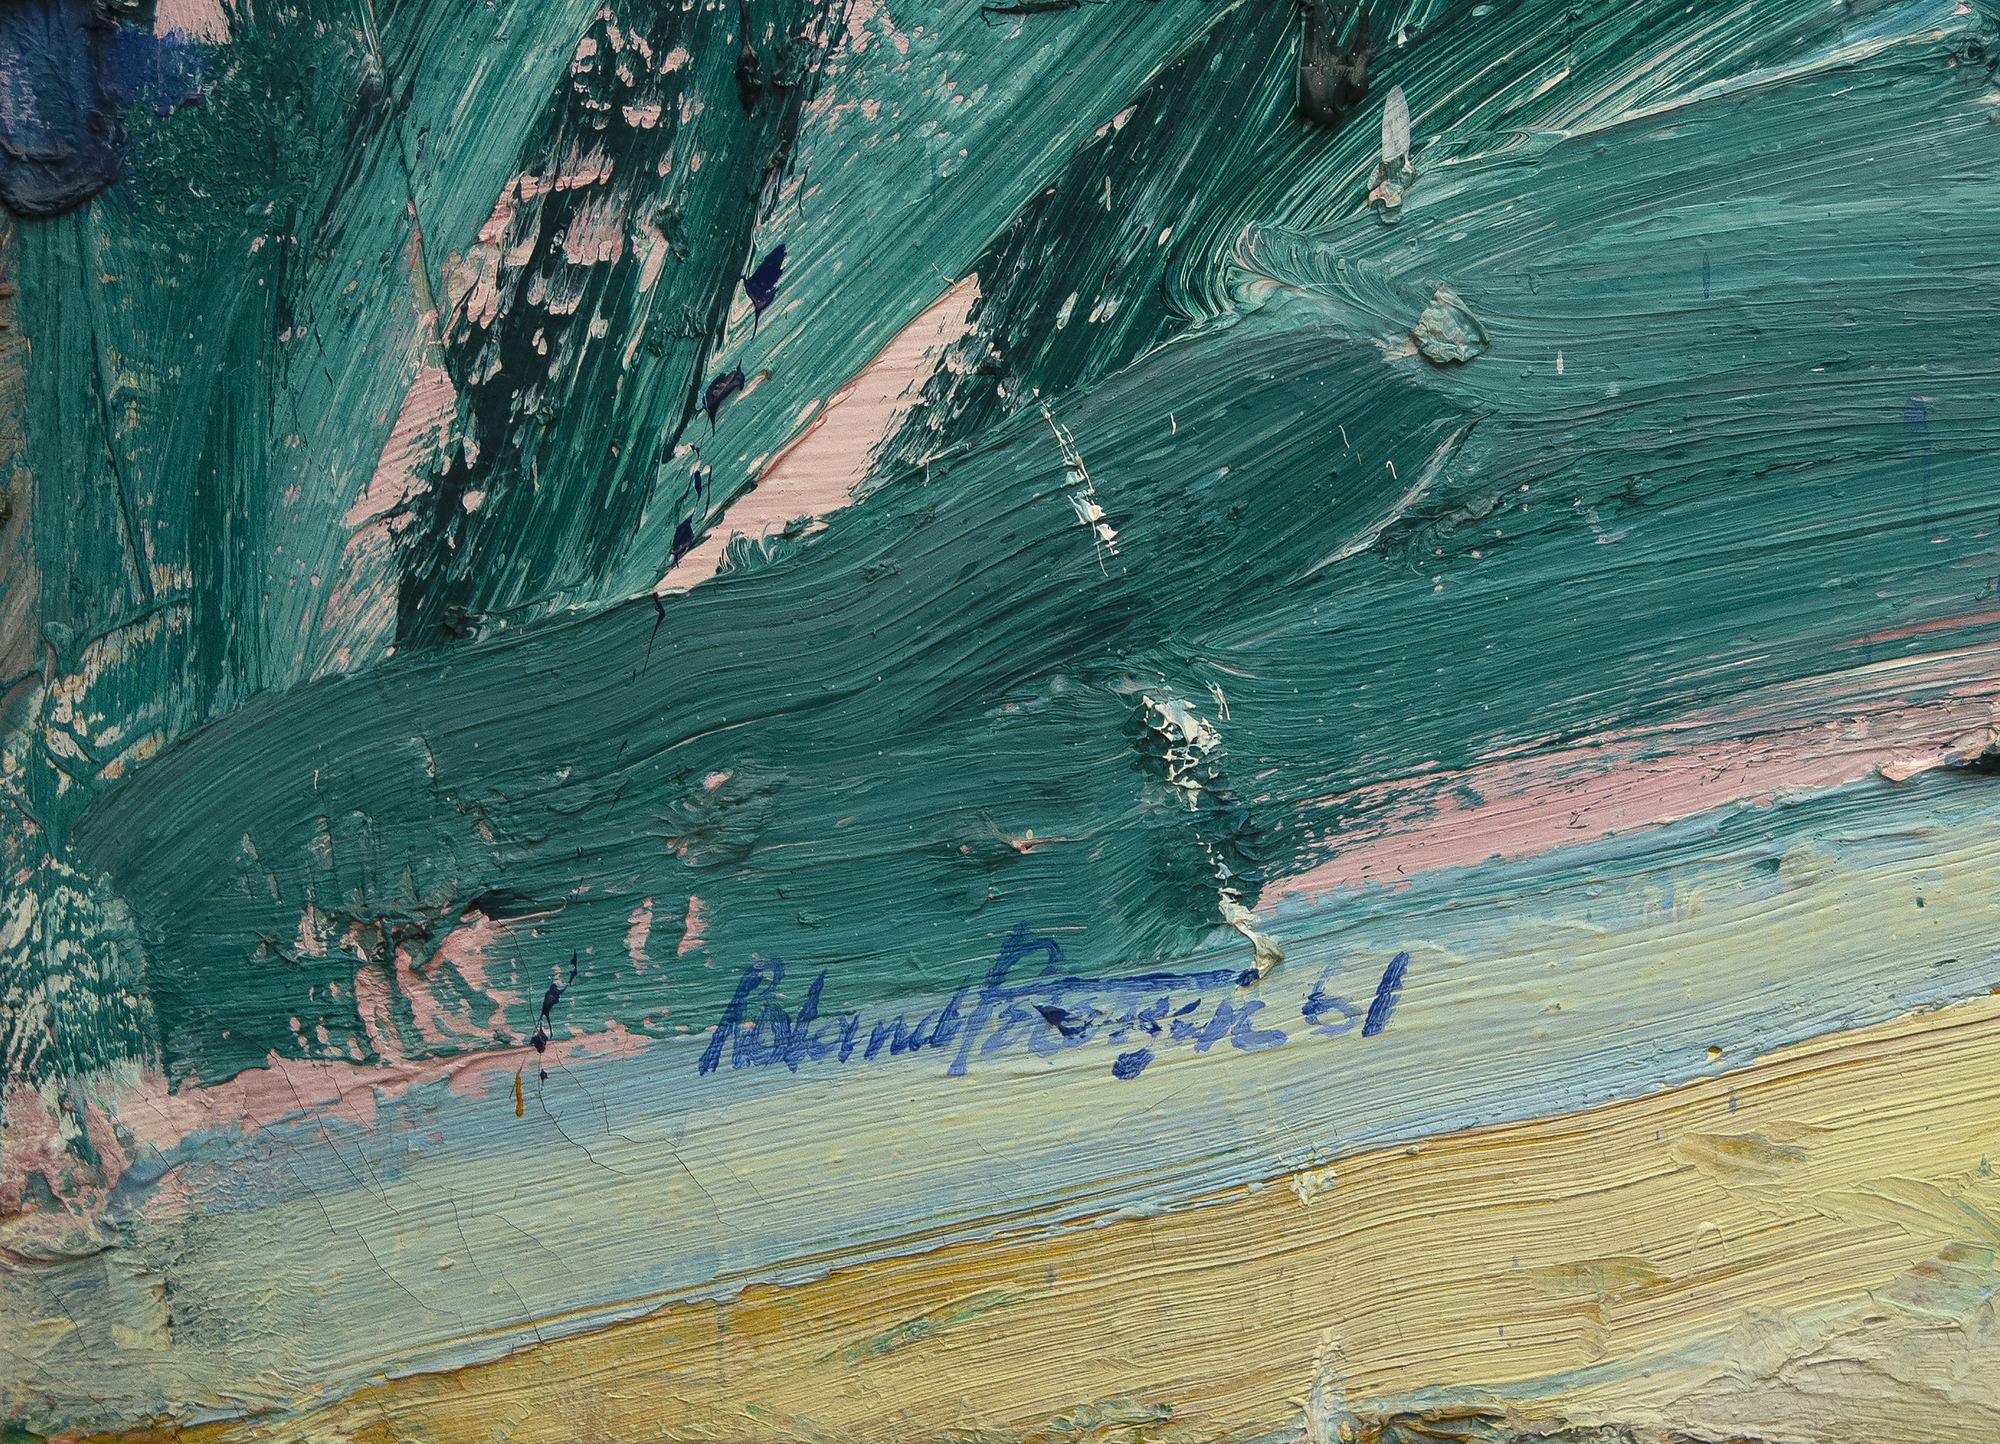 ベイエリアのアーティスト、ローランド・ピーターセンのランチョンは、1961年のキャンバスに油彩を描いた、彼の最も有名なピクニックシリーズの重要な年です。この時代からの彼の作品は、濃厚なインパストと豊かな色彩が特徴です。ハンス・ホフマンとの研究に深い影響を受け、ピーターセンは抽象化を試み、ここでは抽象的で比喩的なスタイルをブレンドしました。ピーターセンが35歳の時に描かれたランチョンは、1962年にニューヨークのシュペンプフリ・ギャラリーでの完売したワンマン・ショー、ロサンゼルスのエステル・ロブレスでの個展、グッゲンハイム・フェローシップなど、その時間内に位置しています。パリで勉強する